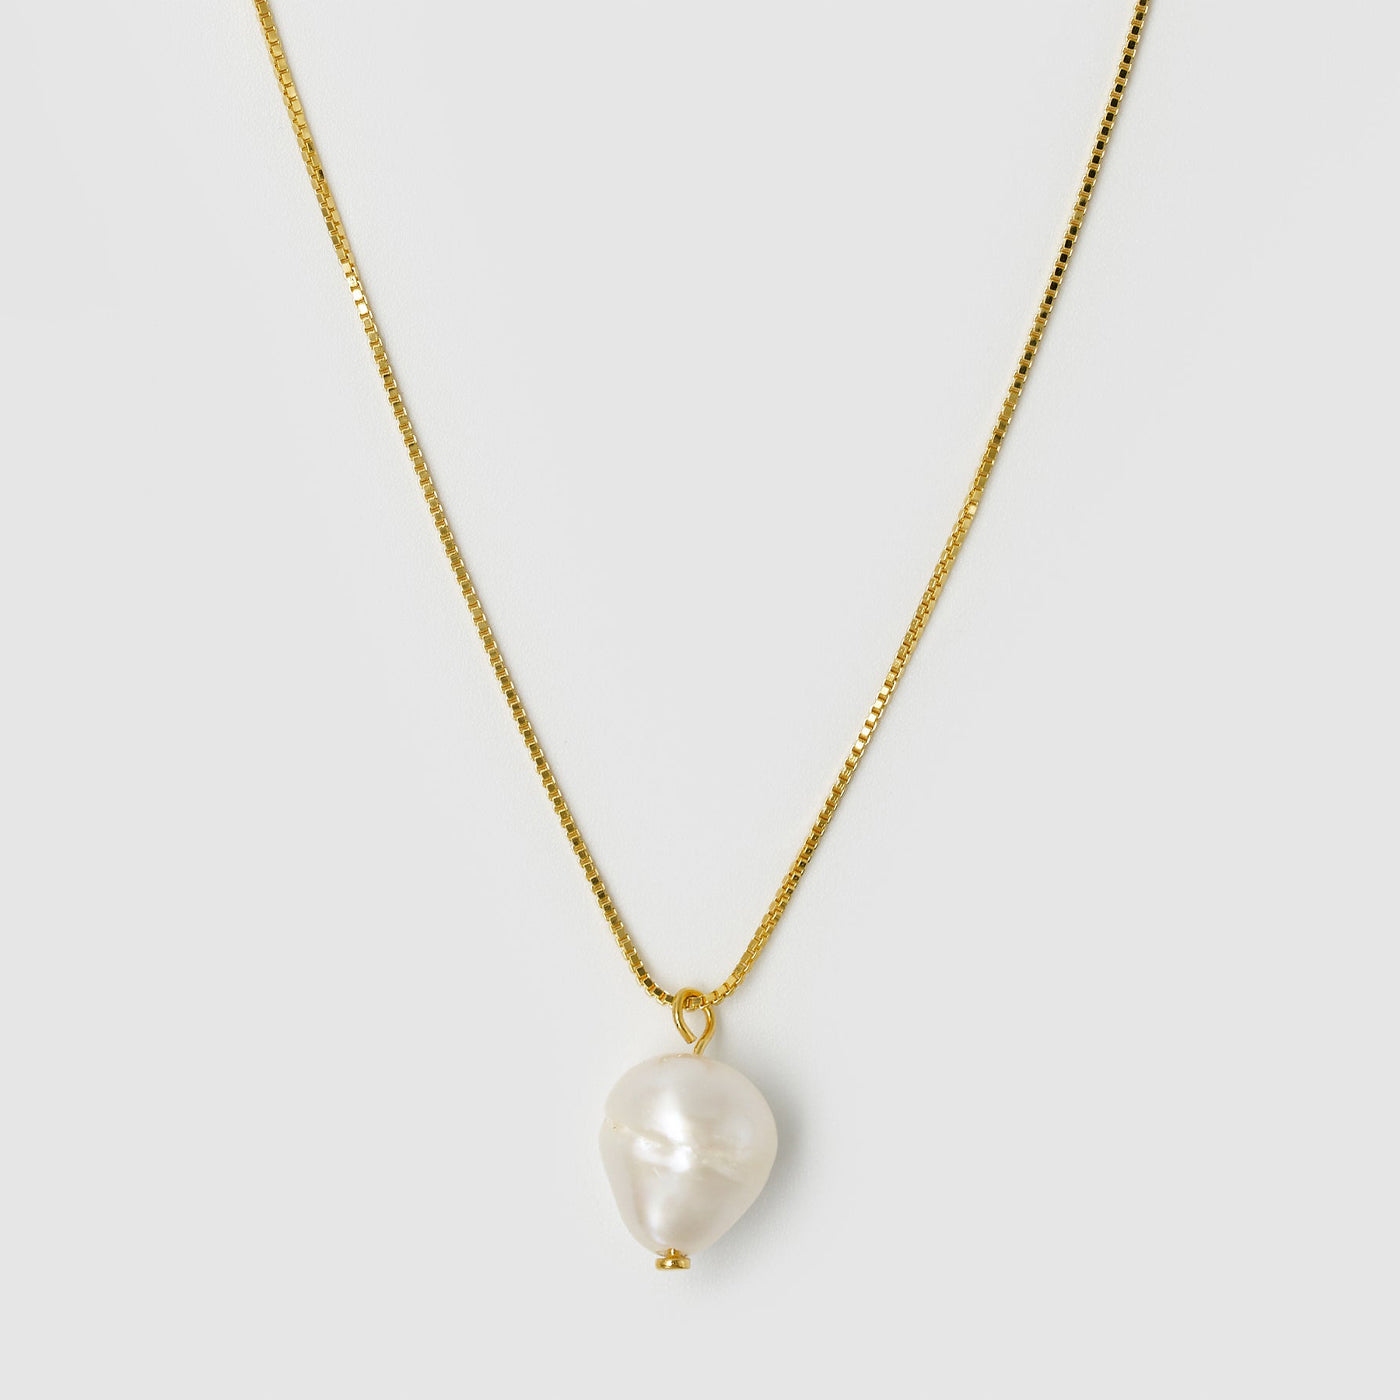 Brie Leon - Lila Pearl Pendant Necklace - Gold